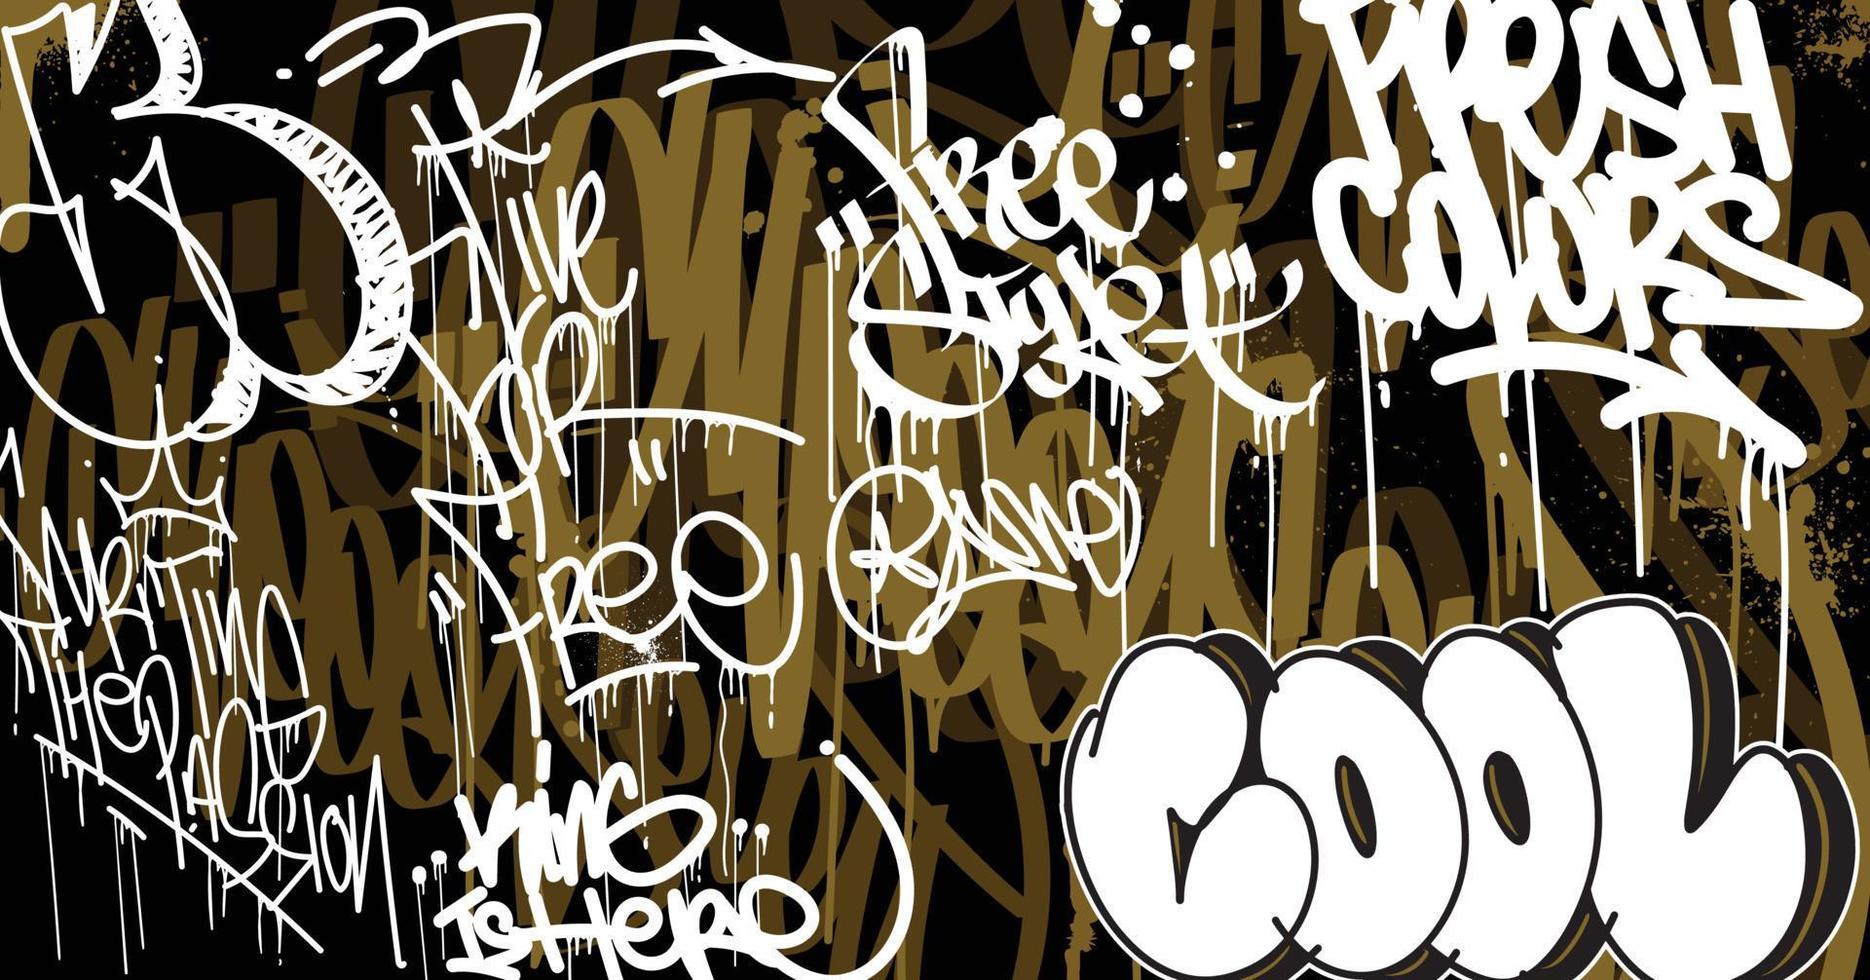 abstract graffiti kunst achtergrond met kattebelletje overgeven en taggen hand getekend stijl. straat kunst graffiti stedelijk thema voor afdrukken, patronen, spandoeken, en textiel in vector formaat.